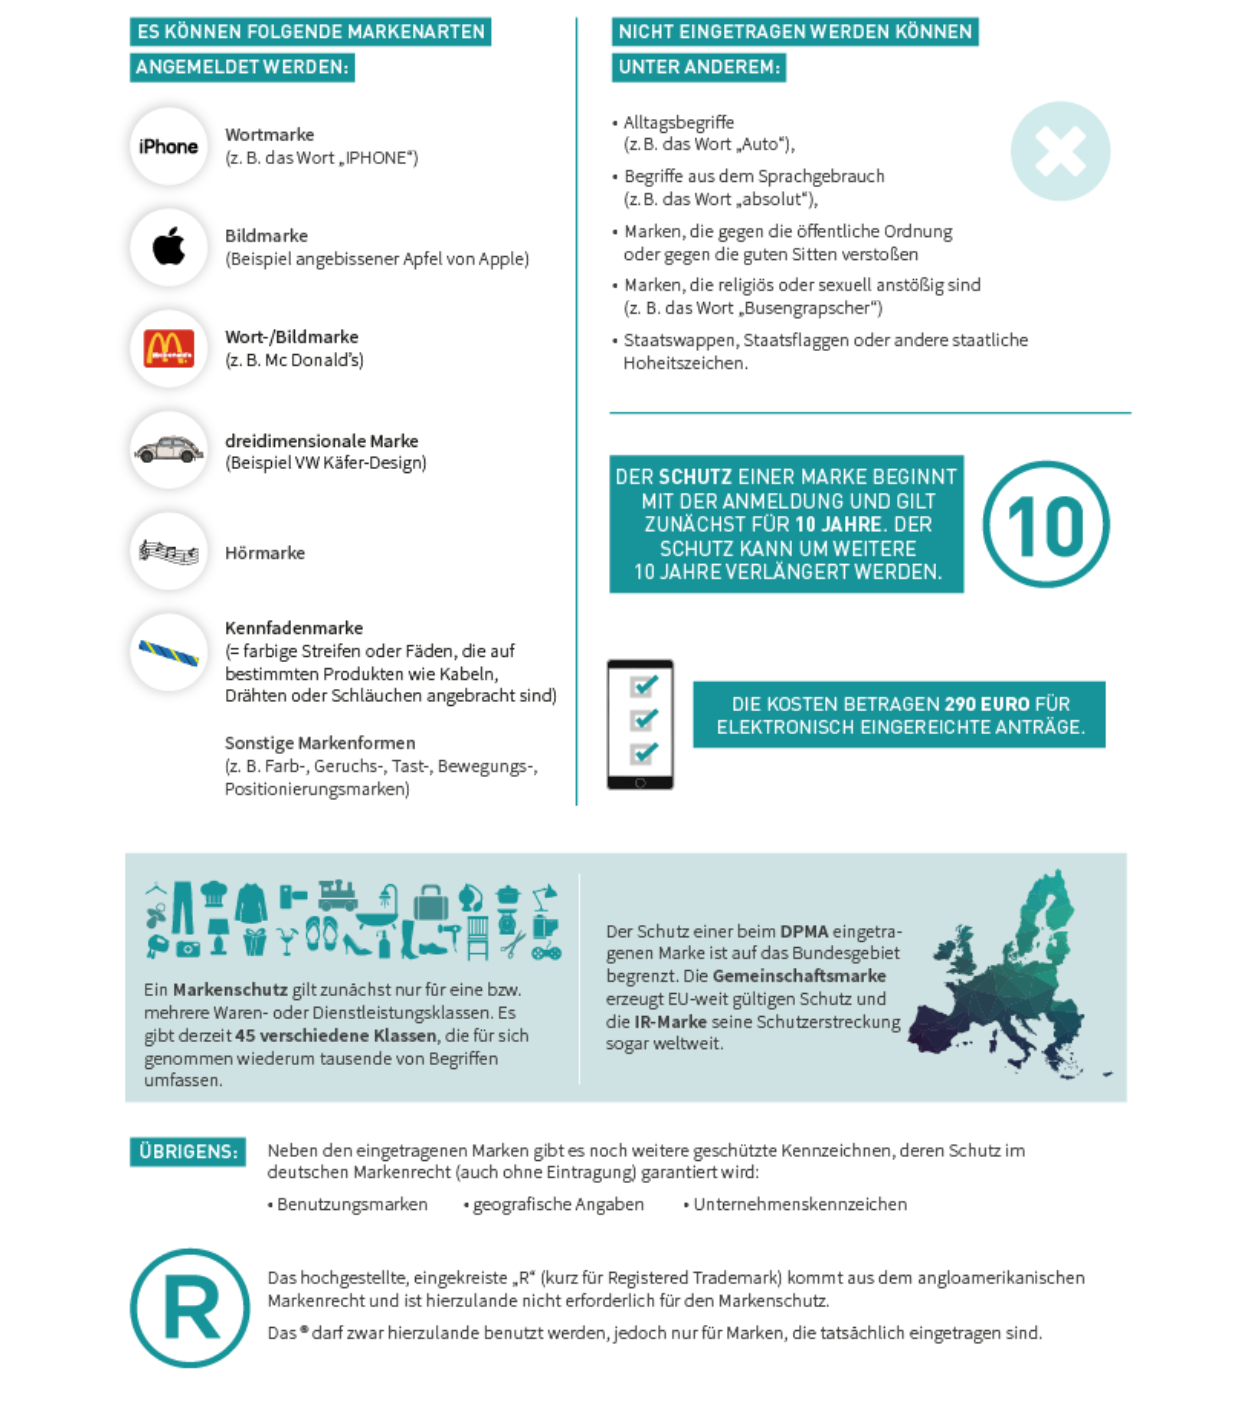 Infografik zum Markenrecht © Händlerbund